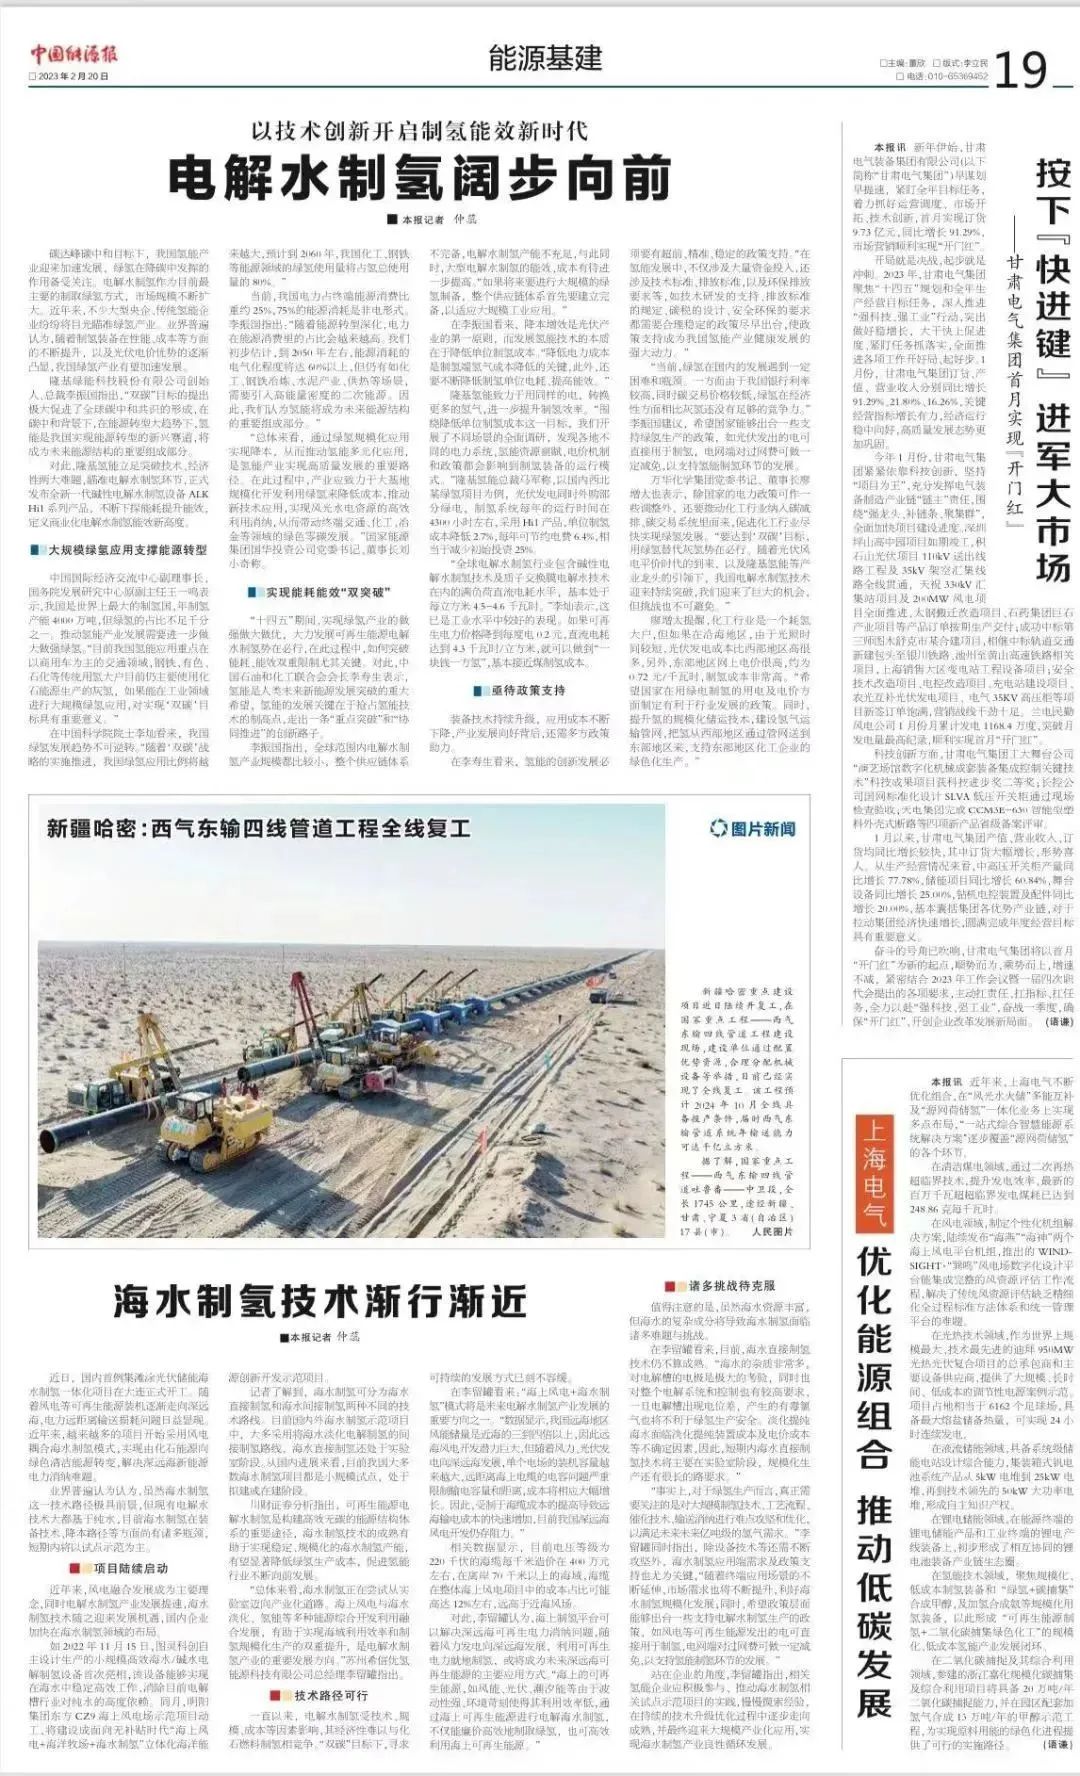 《中国能源报》关注隆基氢能新品发布